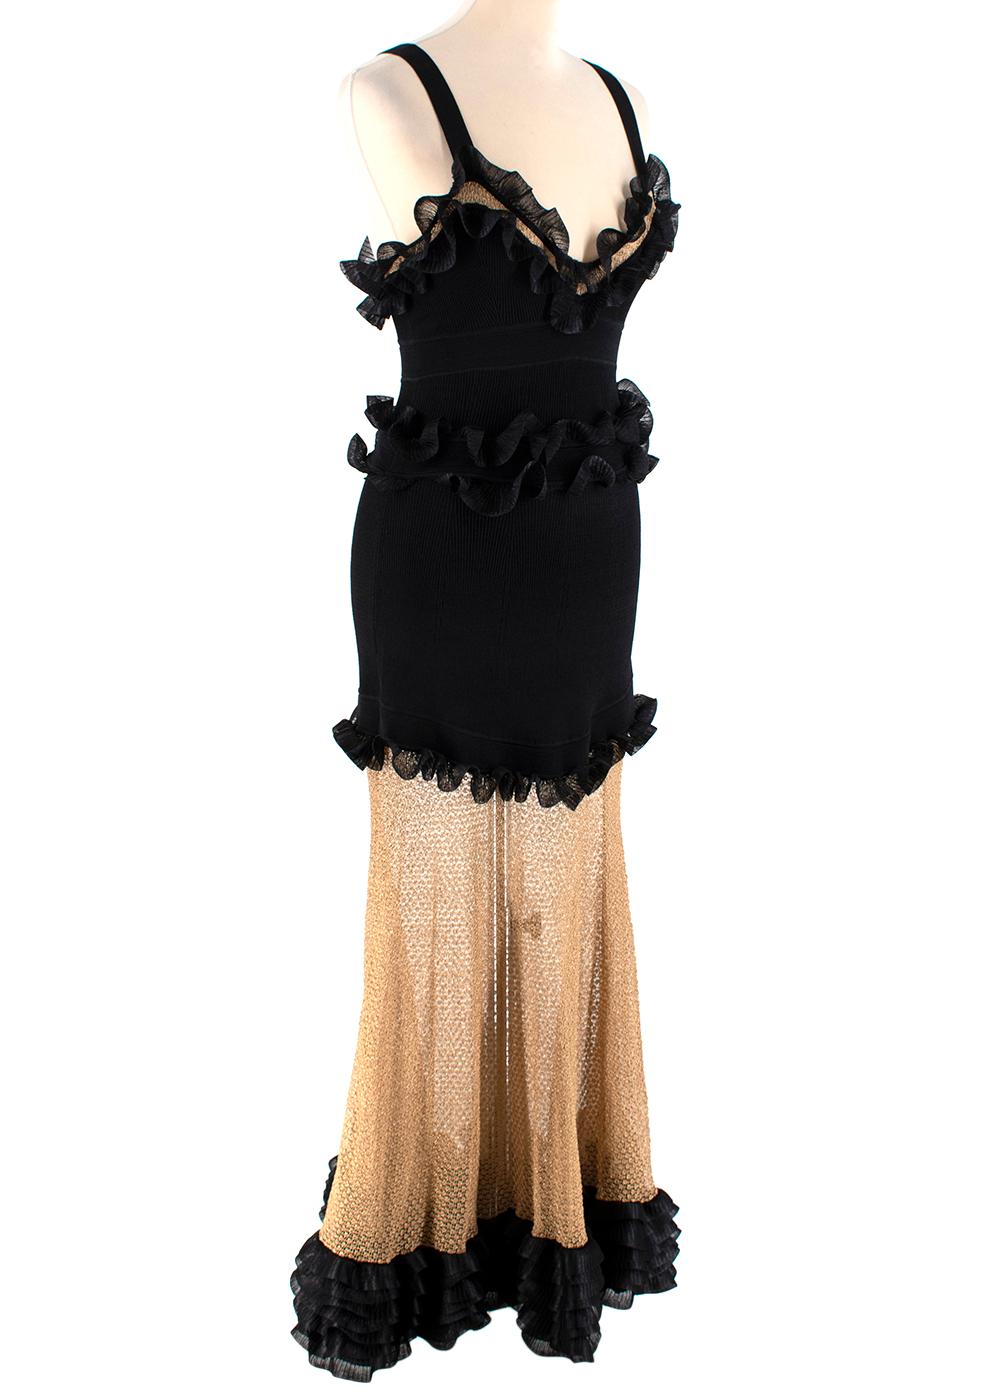 Alexander McQueen Black Silk-blend And Mesh Dress

- Mesh Knit dress 
- Colour block black & gold panels
 - Ruffles to the bust, waist, hips & hem
- Ruffled tie 
- Sweetheart collar
- Black zip on the side

Materials: 
34% silk
33% rayon
16%